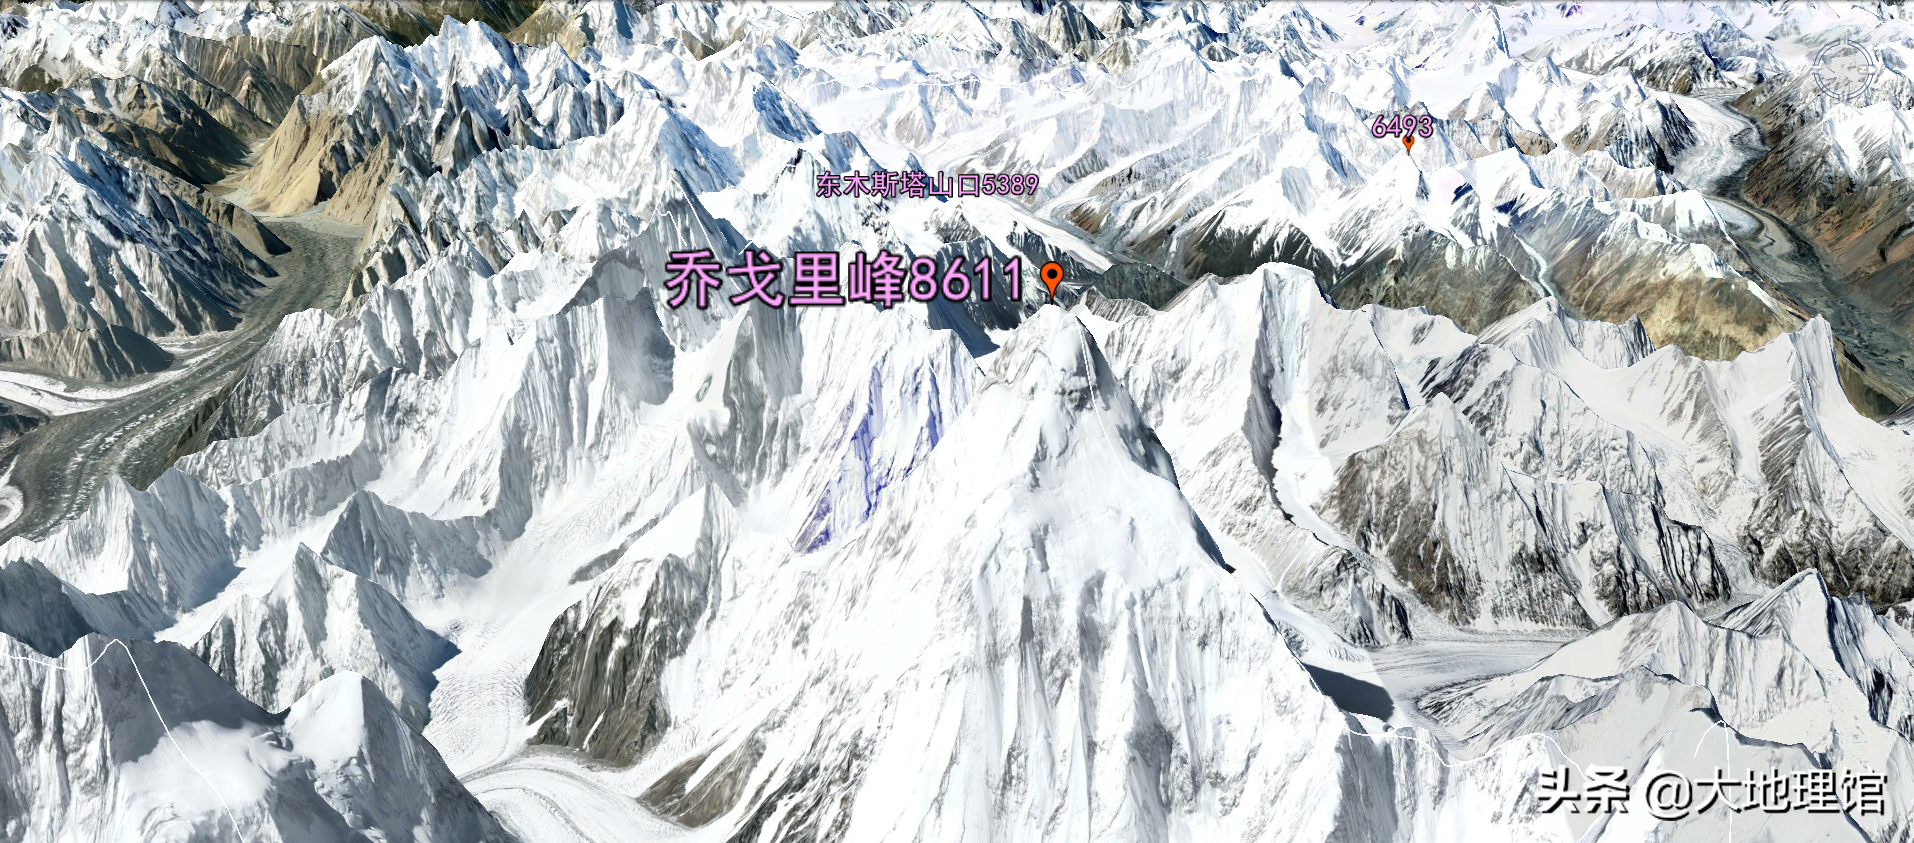 全景视角，看世界第二高峰——乔戈里峰